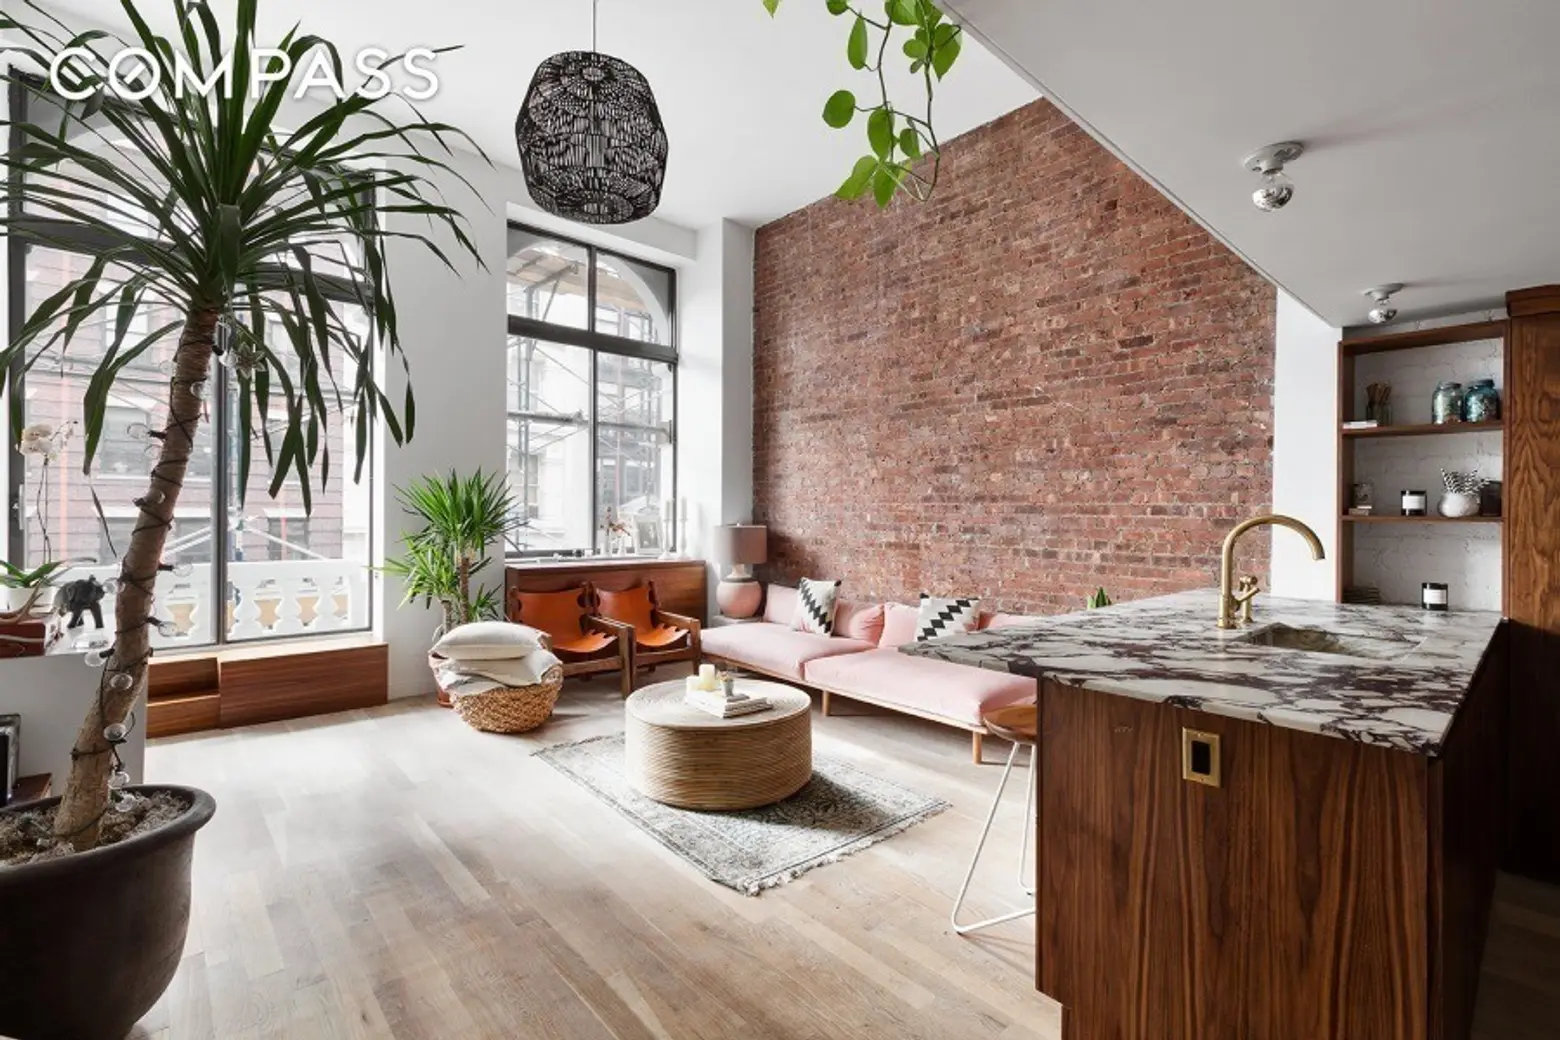 Free People art director lists boho-chic loft in Greenwich Village for $999K